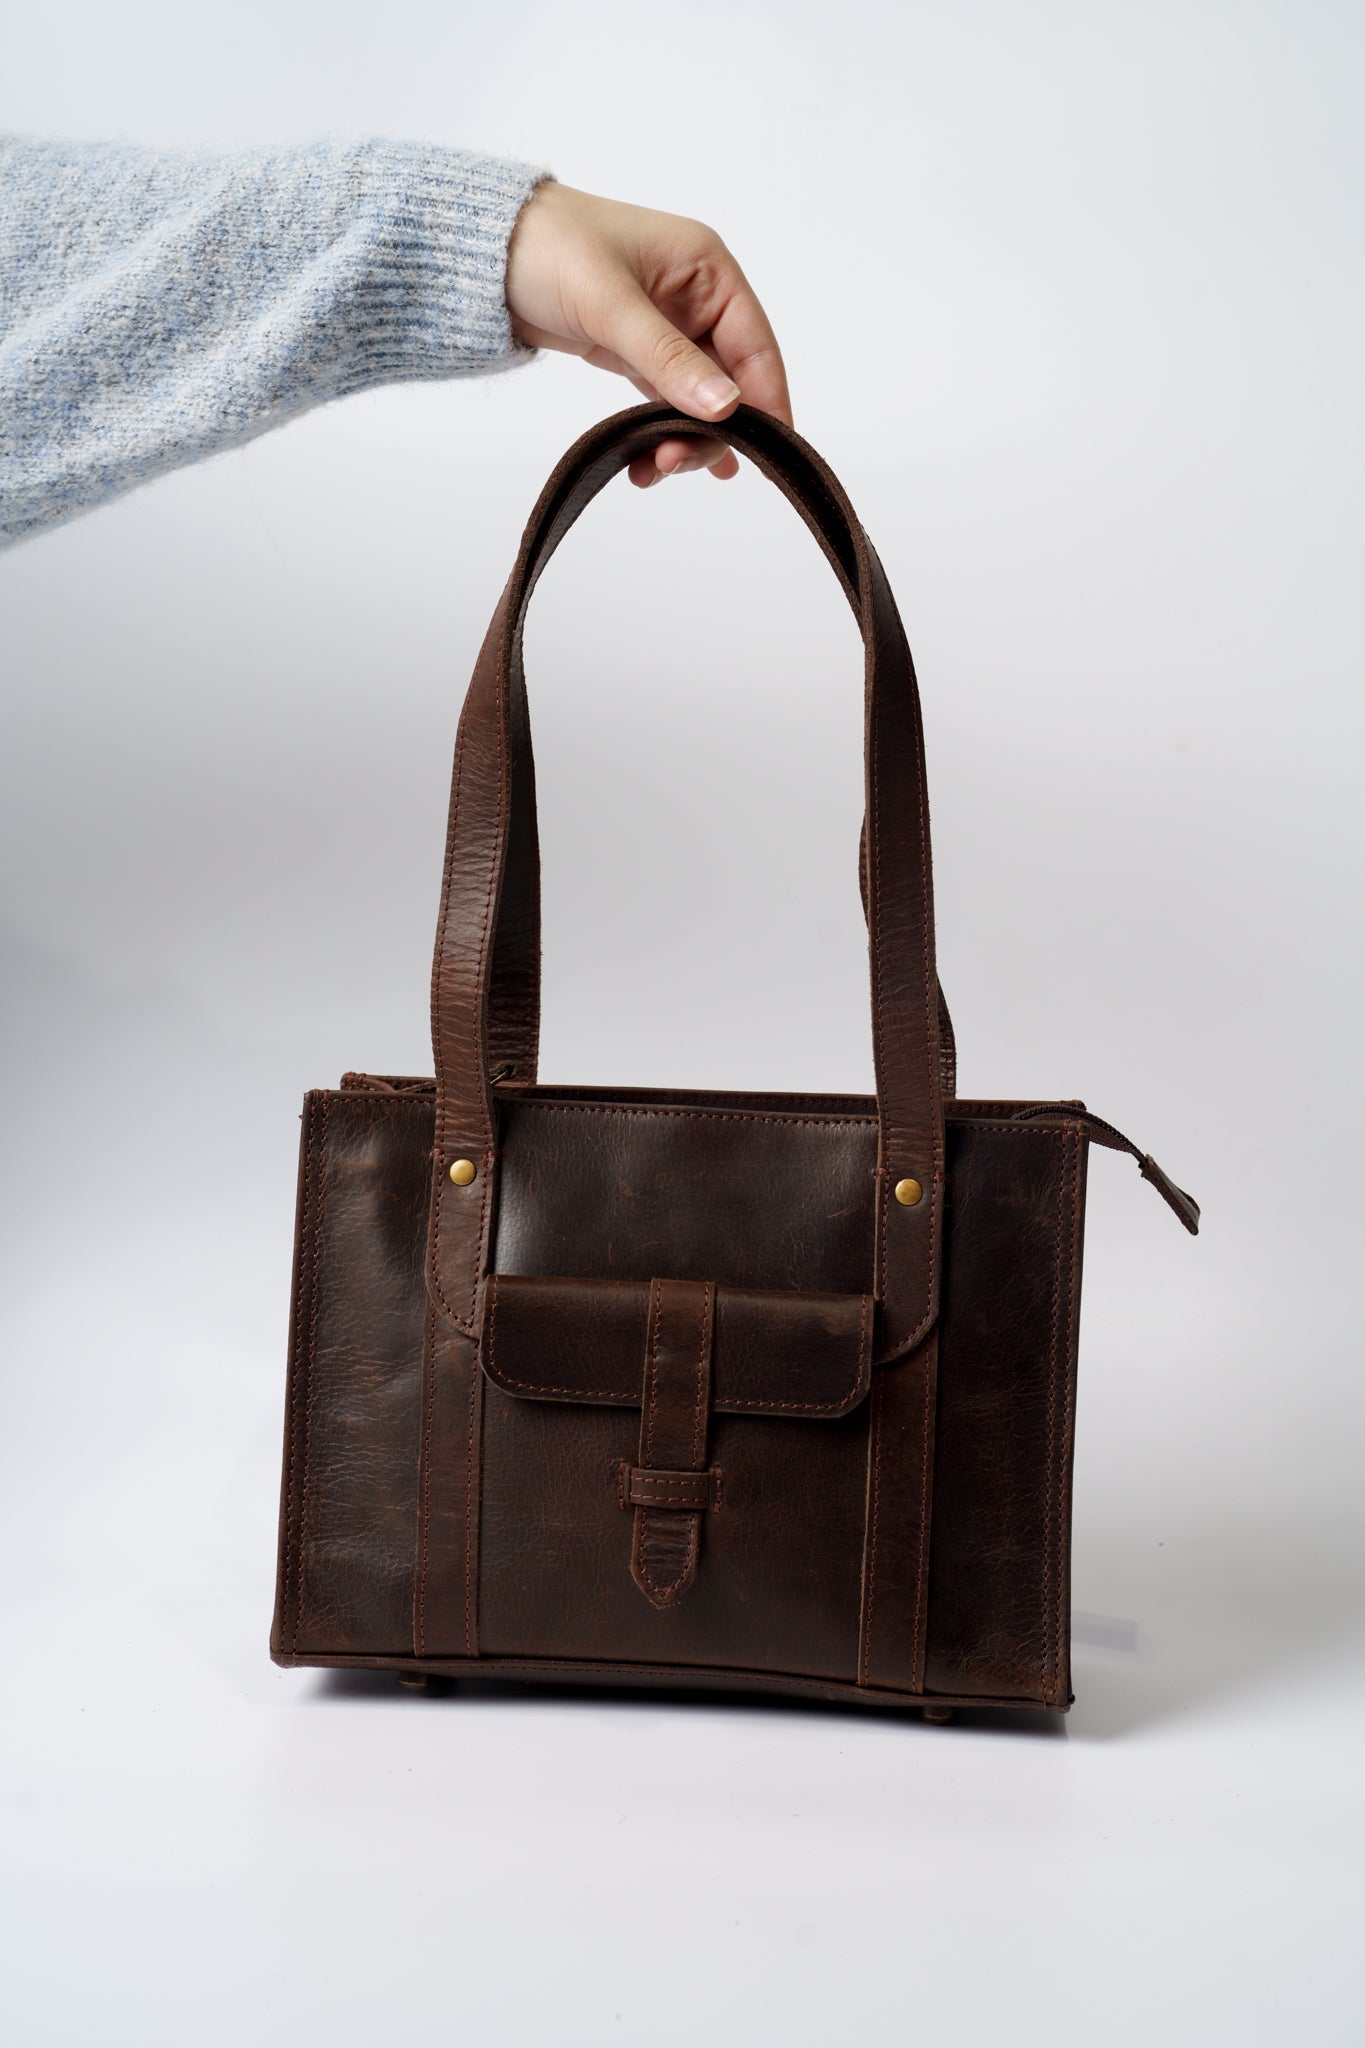 Vintage Rustic Leather Handbag